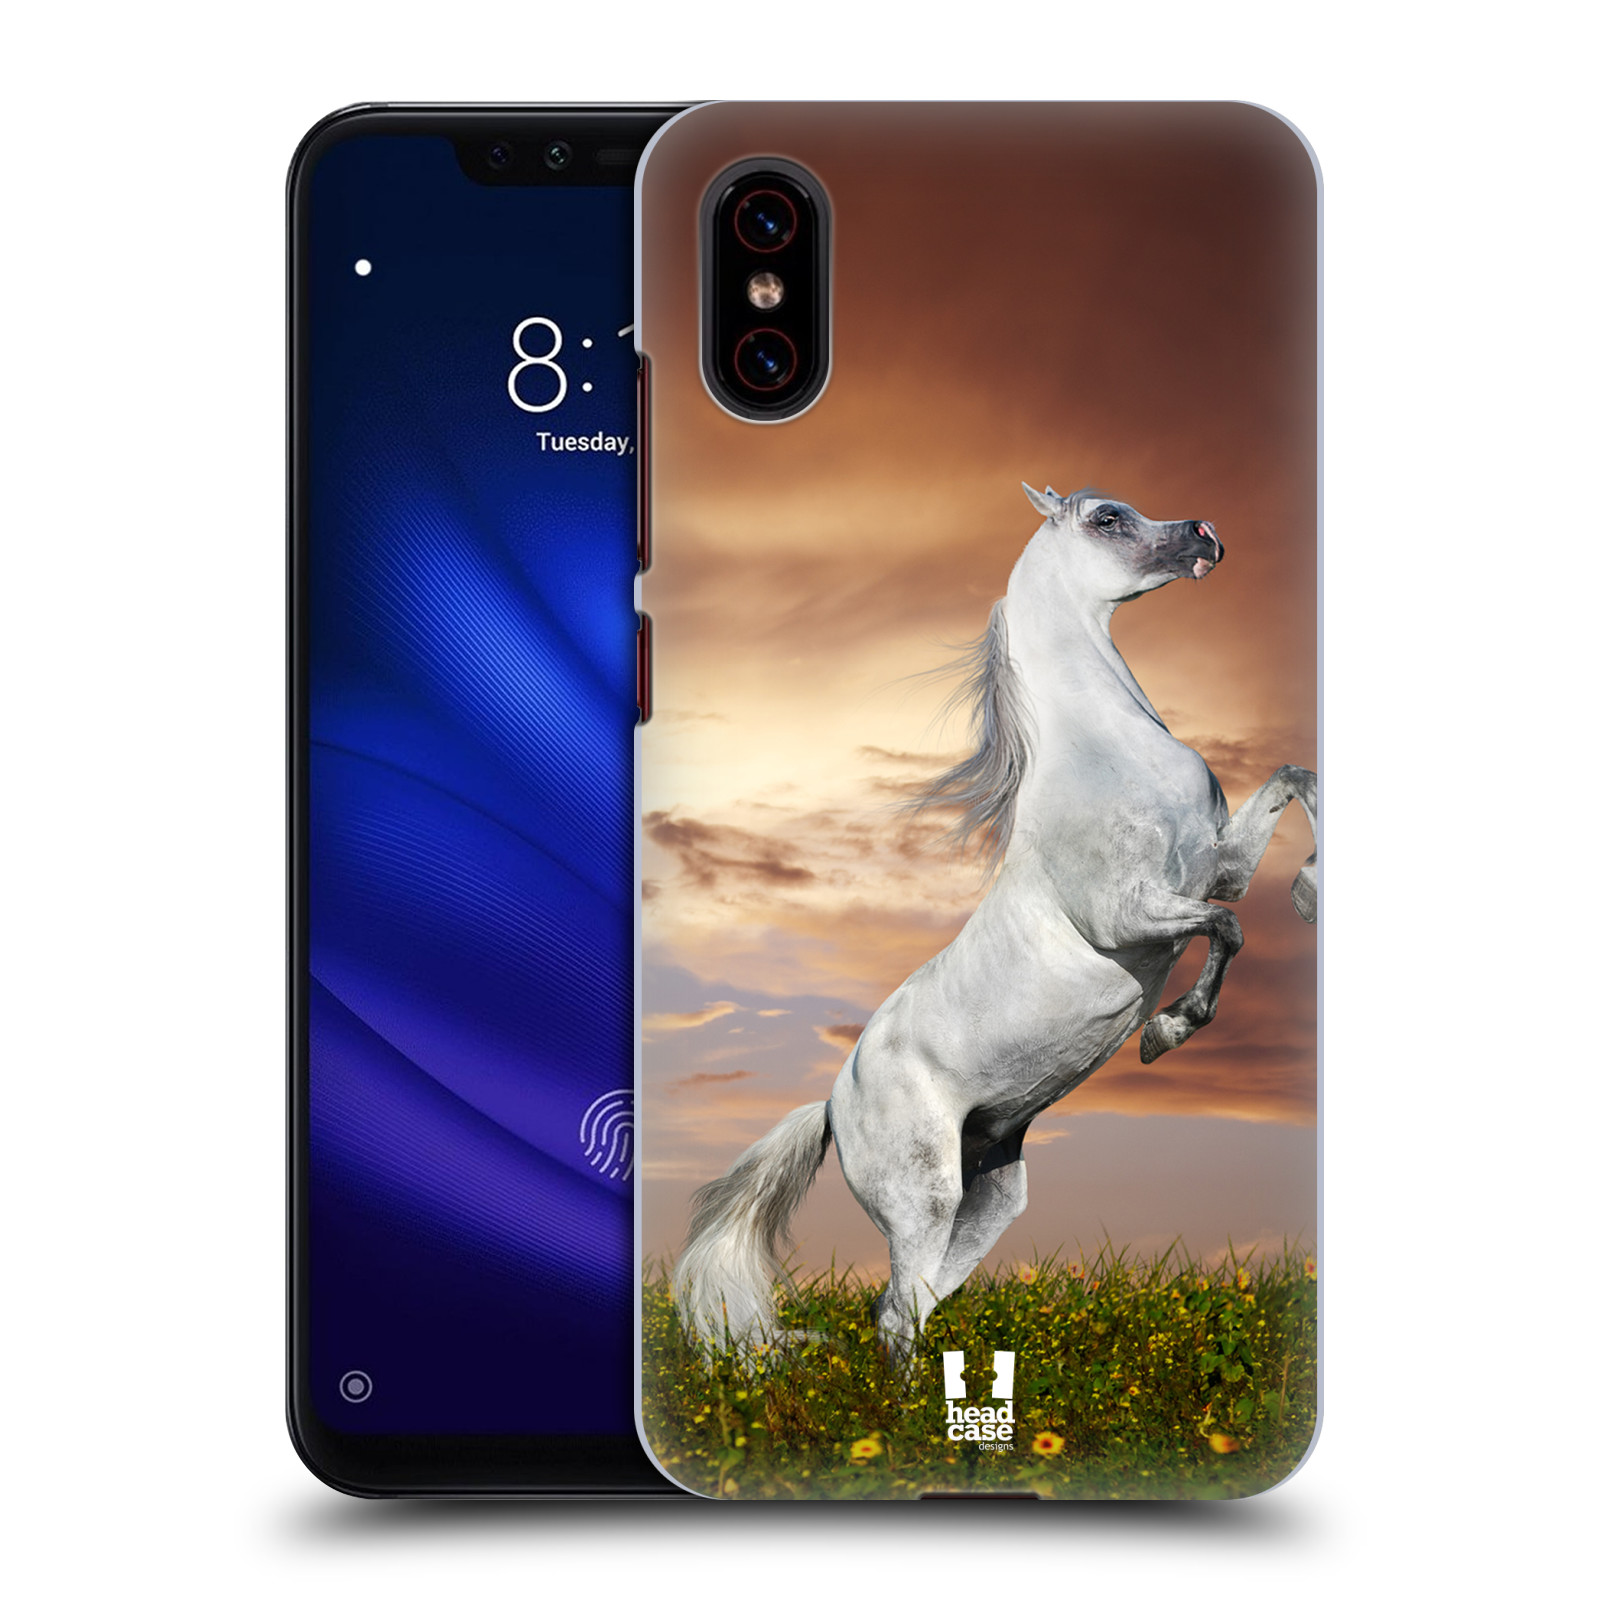 Zadní obal pro mobil Xiaomi Mi 8 PRO - HEAD CASE - Svět zvířat divoký kůň